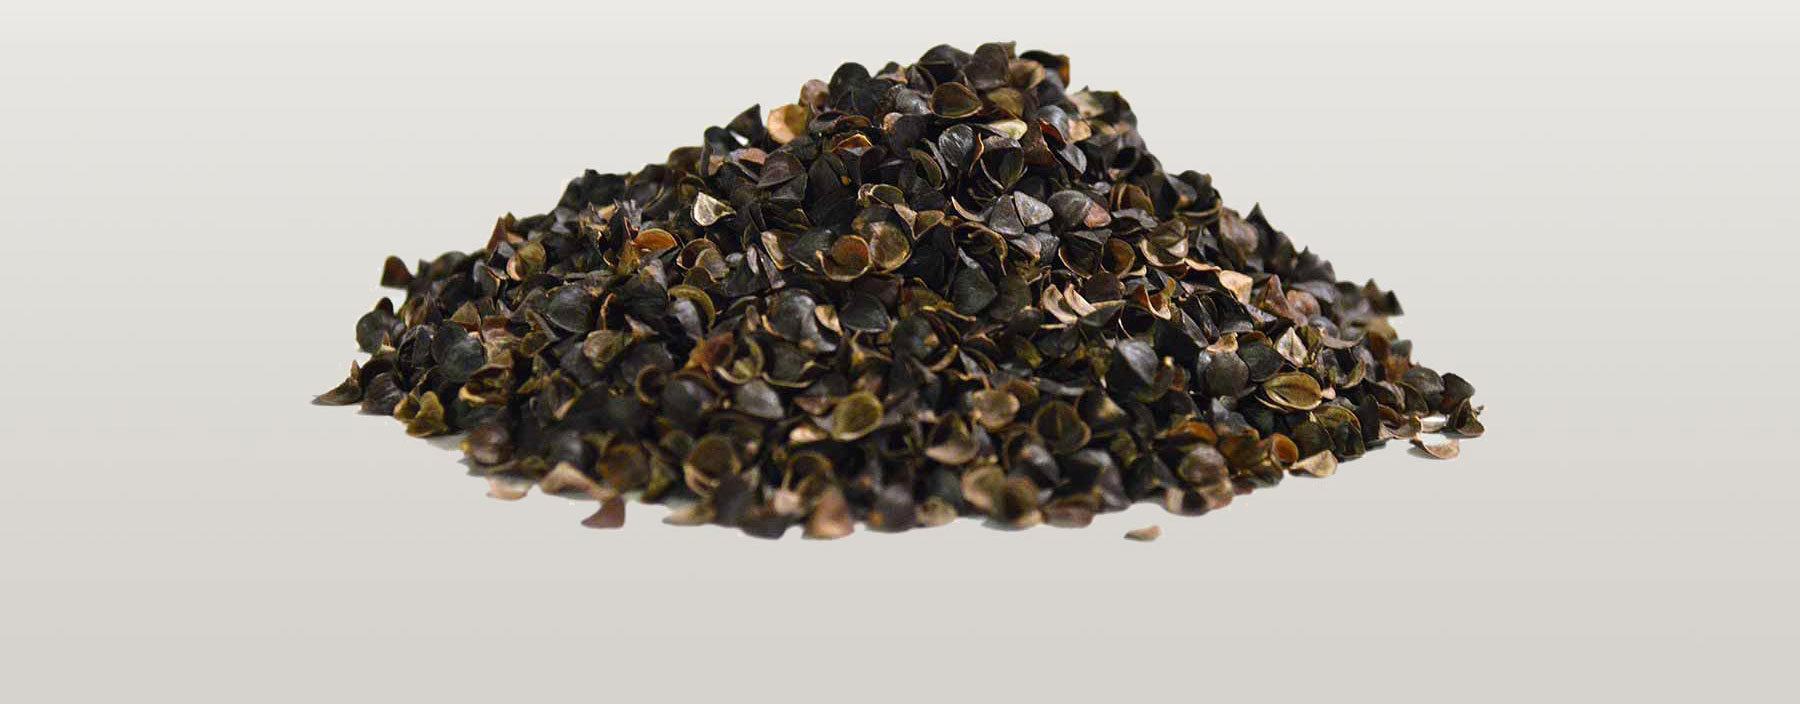 Close-up photograph of premium buckwheat hulls - intact, not crumbled